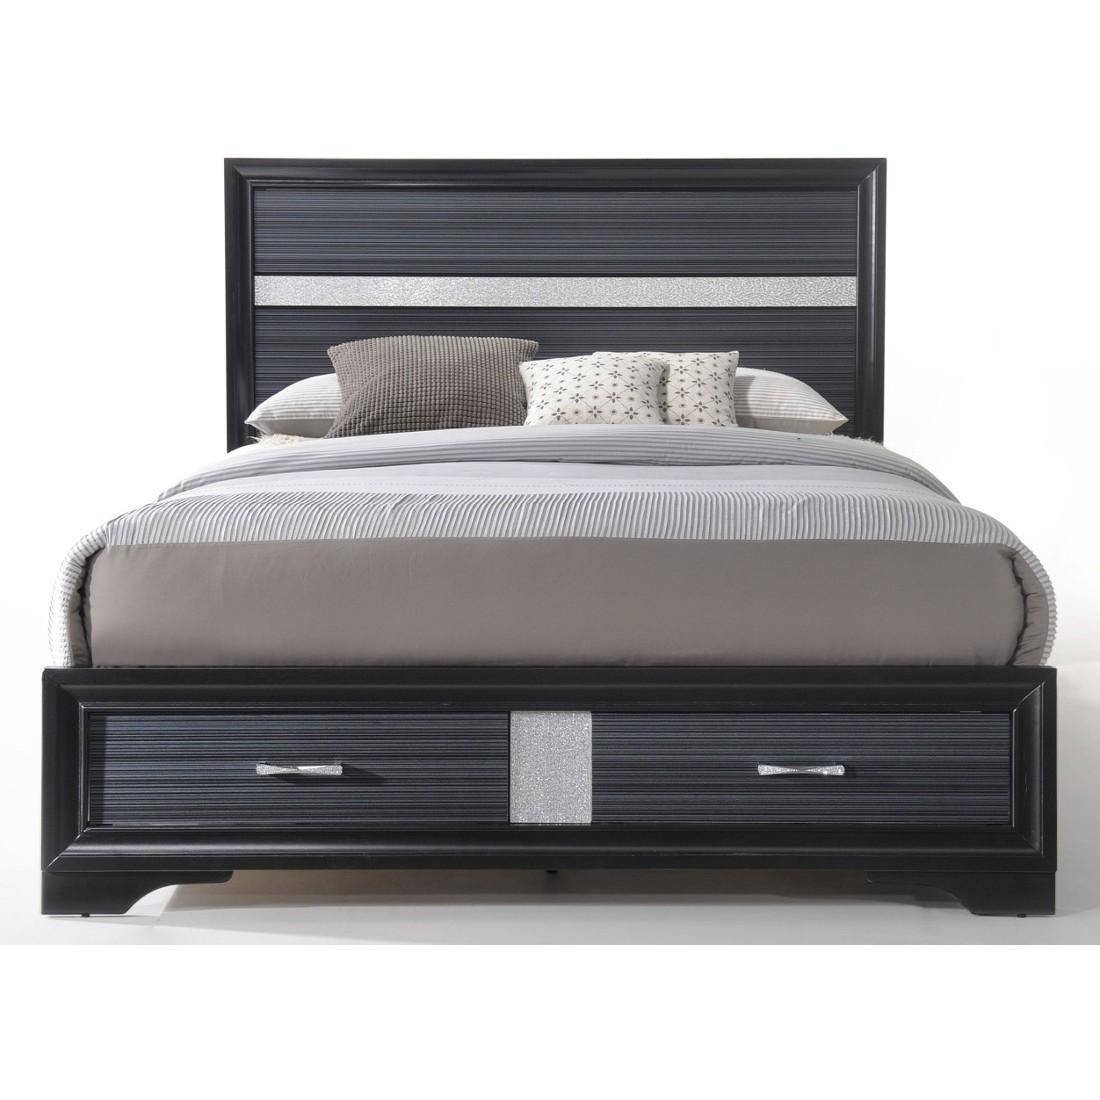 Wood Queen Bedroom Set Luxury Black Wood Queen Storage Bedroom Set 4pcs Naima Q Acme